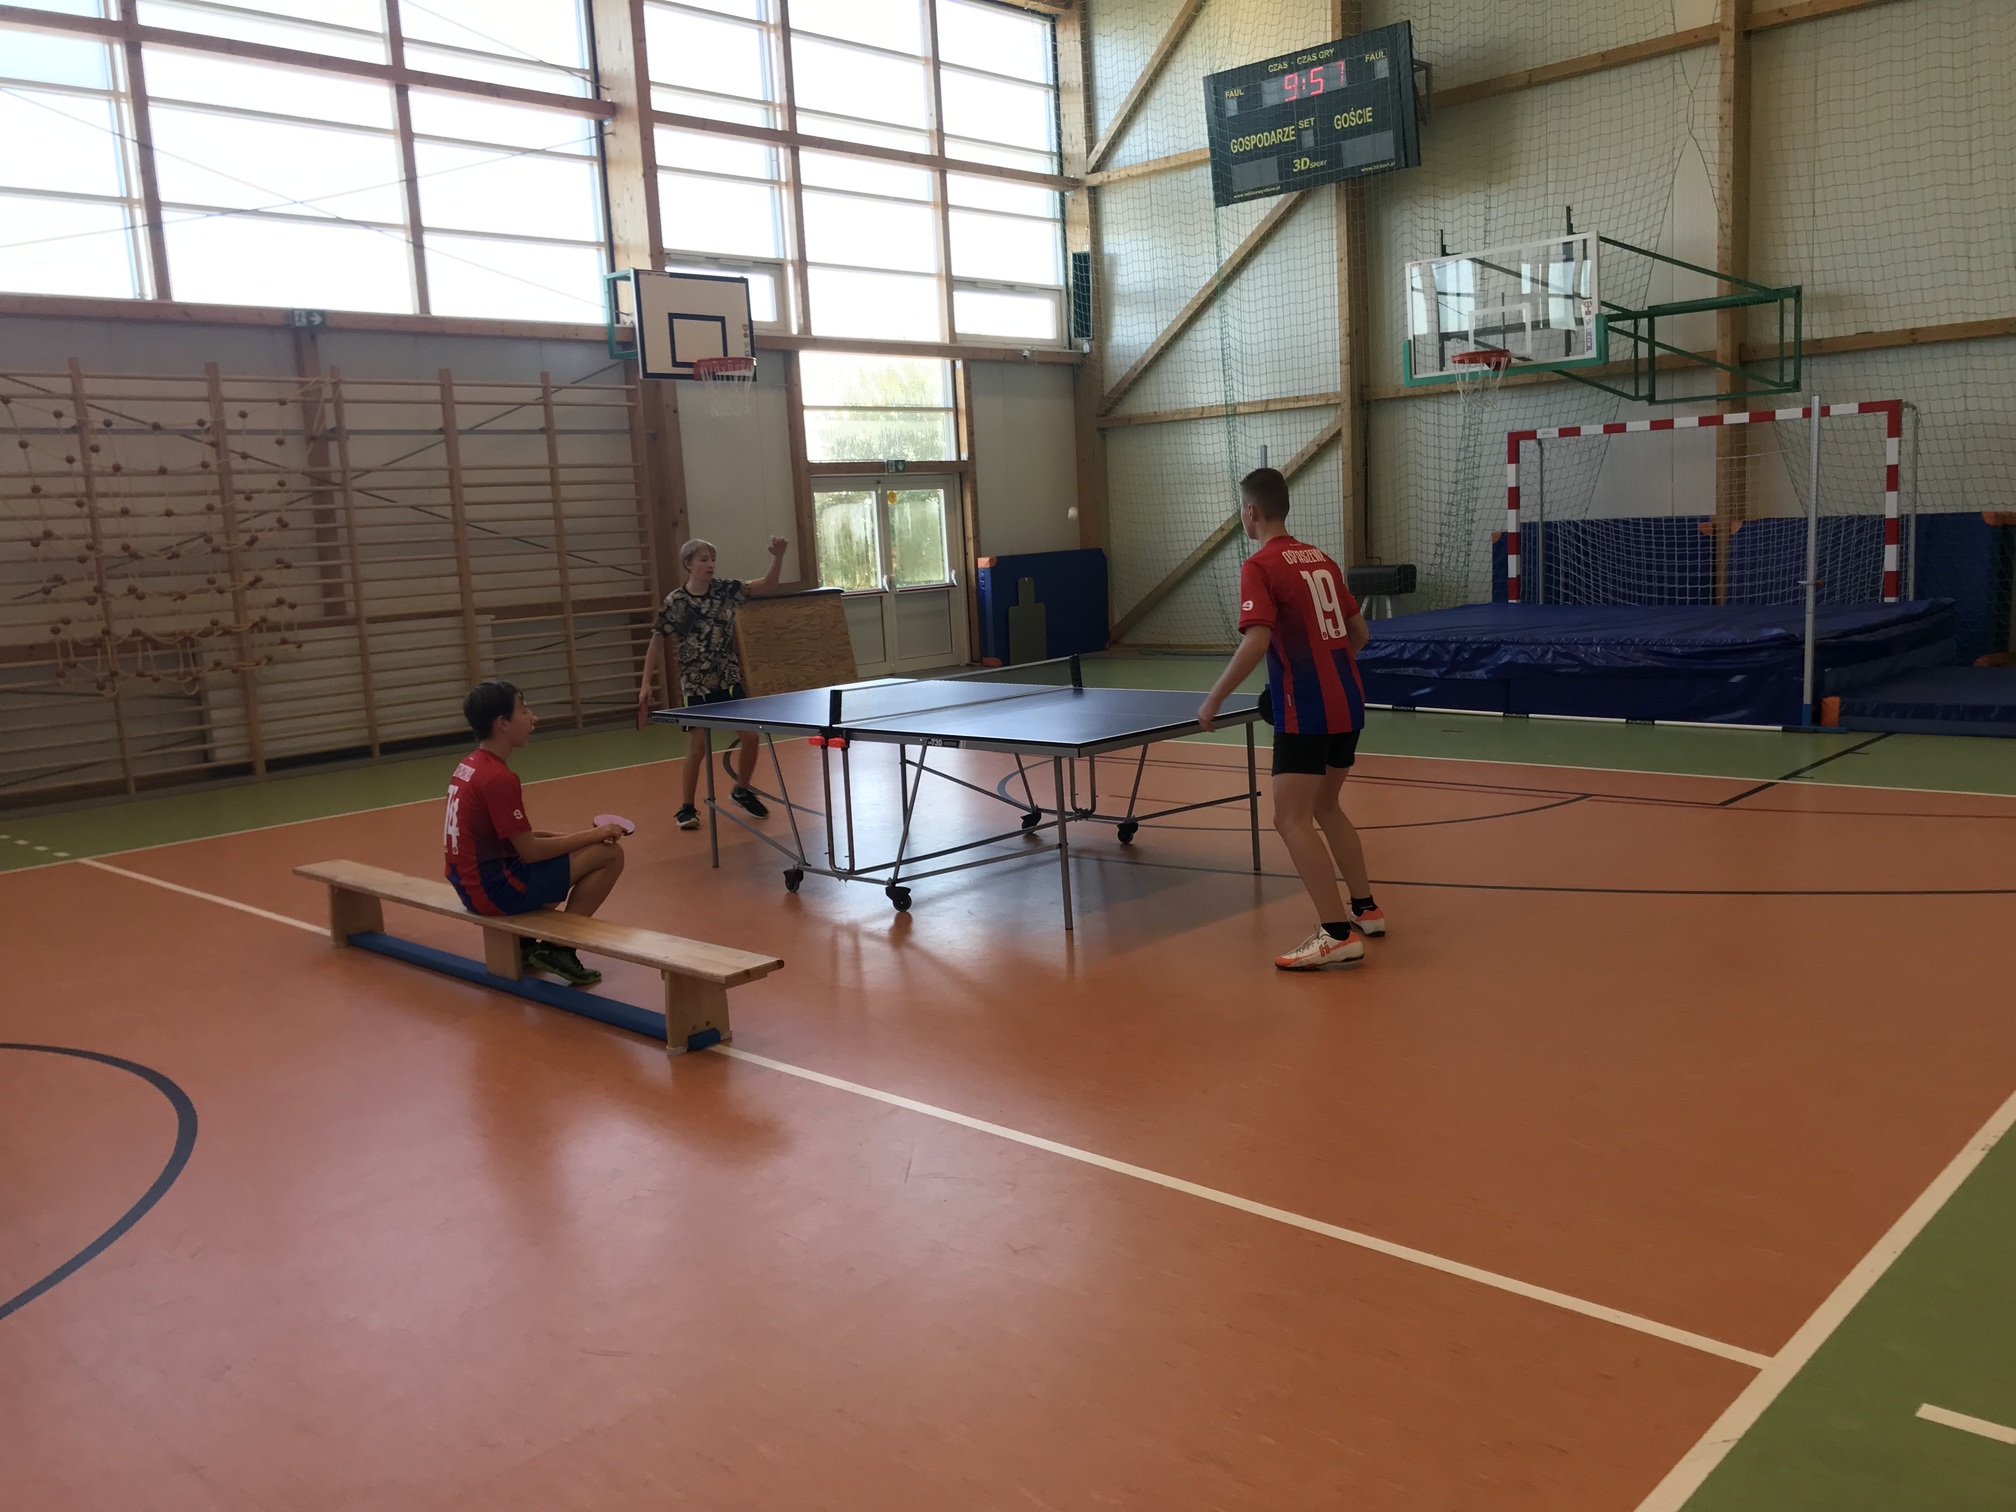 Uczniowie na sali gimnastycznej grają w tenisa stołowego. Dwóch uczniów gra. Trzeci uczeń siedzi na ławeczce obok.